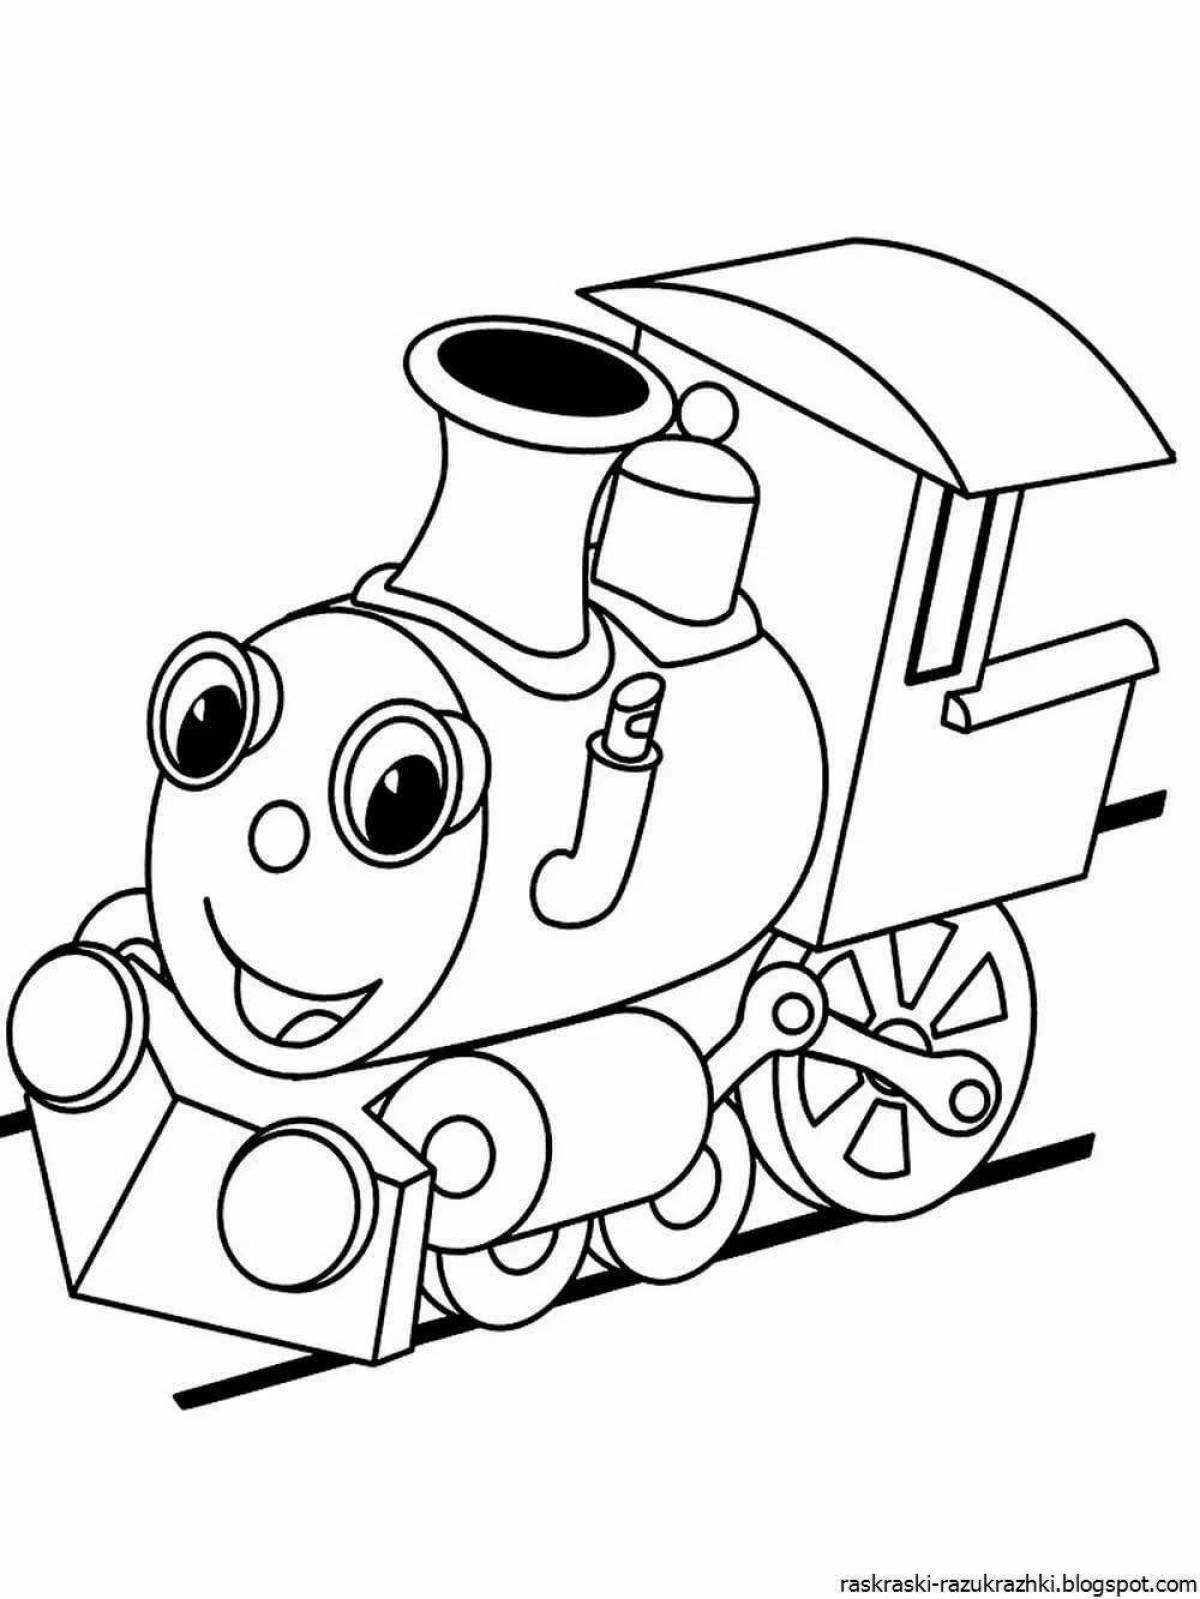 Увлекательная раскраска поезда для детей